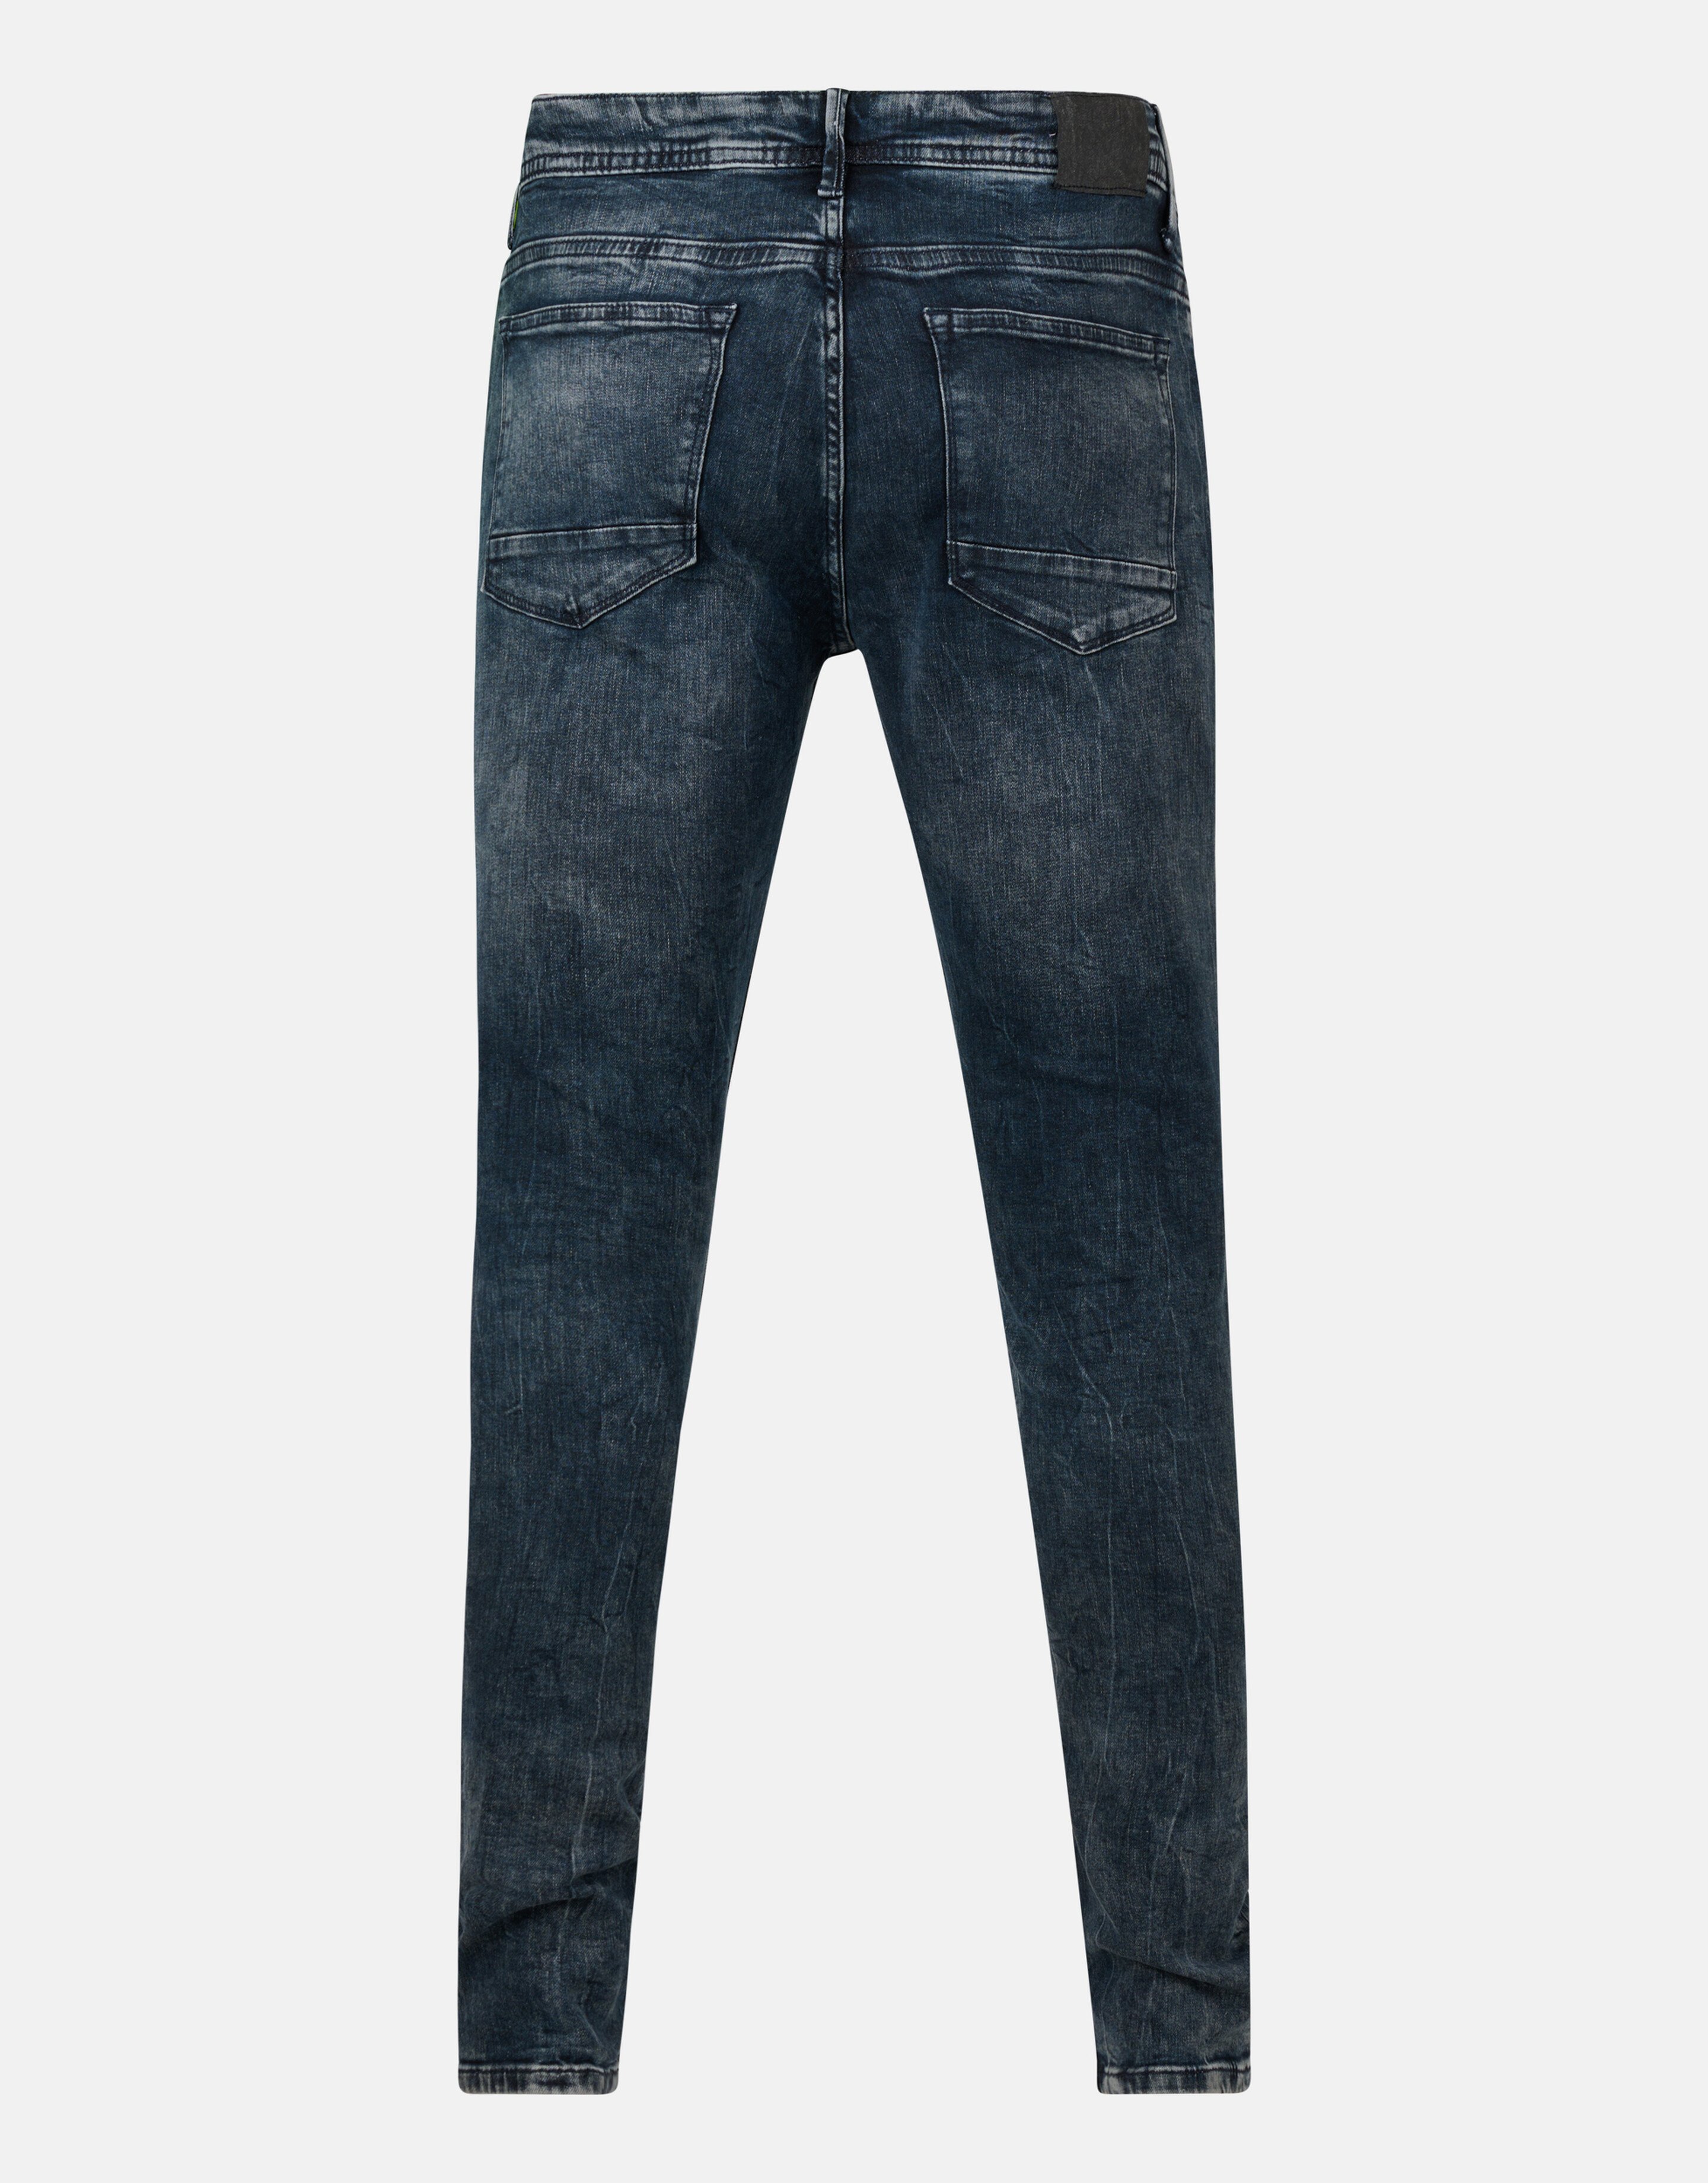 Skinny Jeans Blauw/Grijs L32 SHOEBY MEN